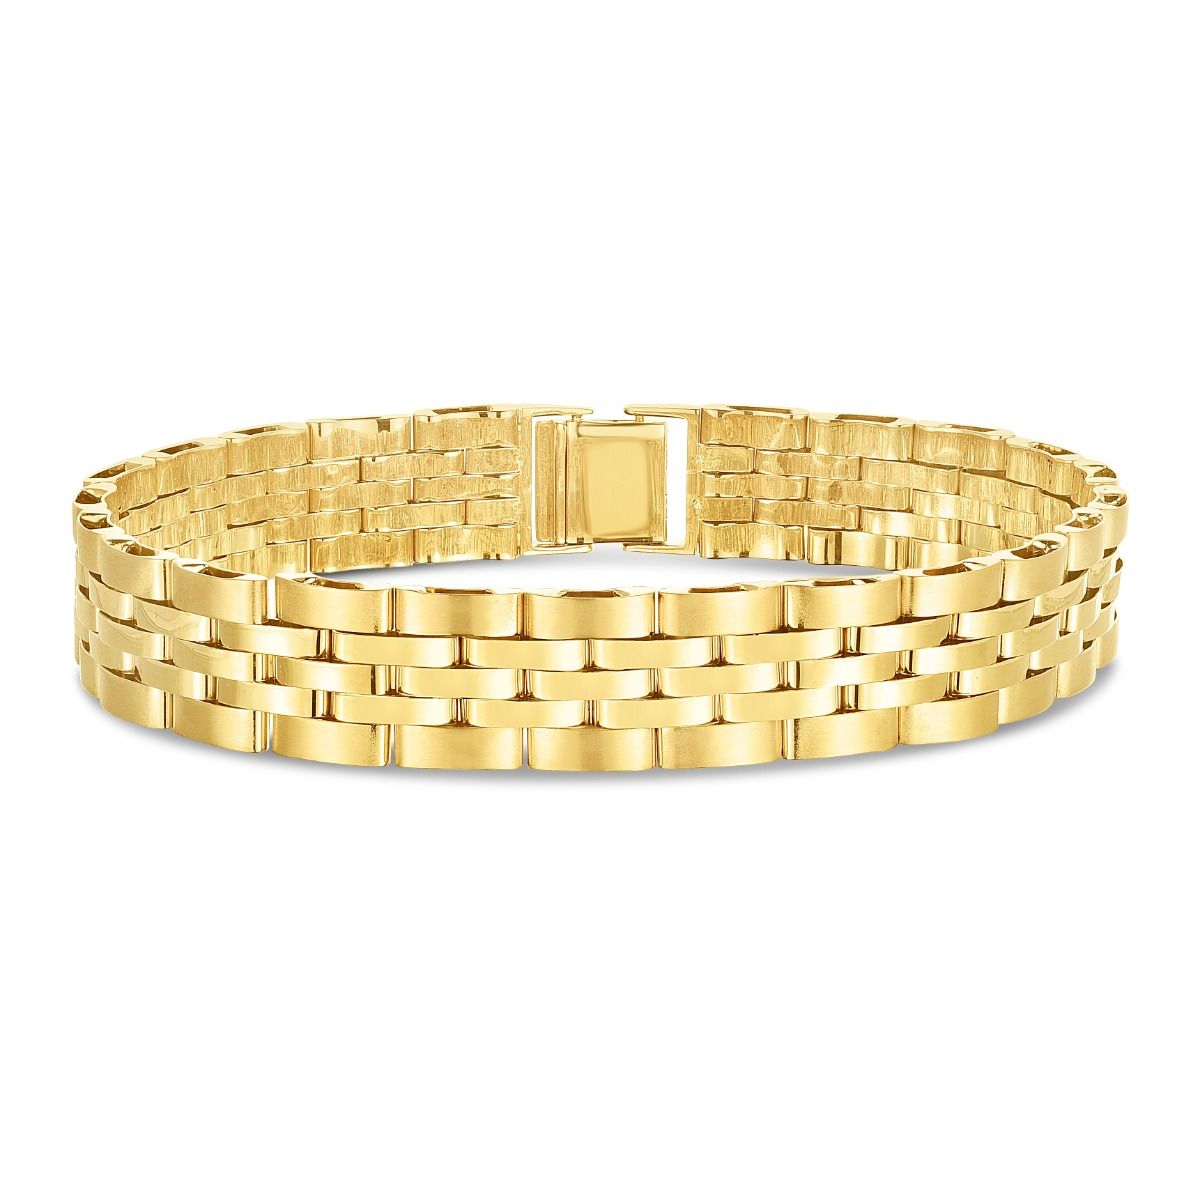 The Golden Jaguar Bracelet – VidaKush